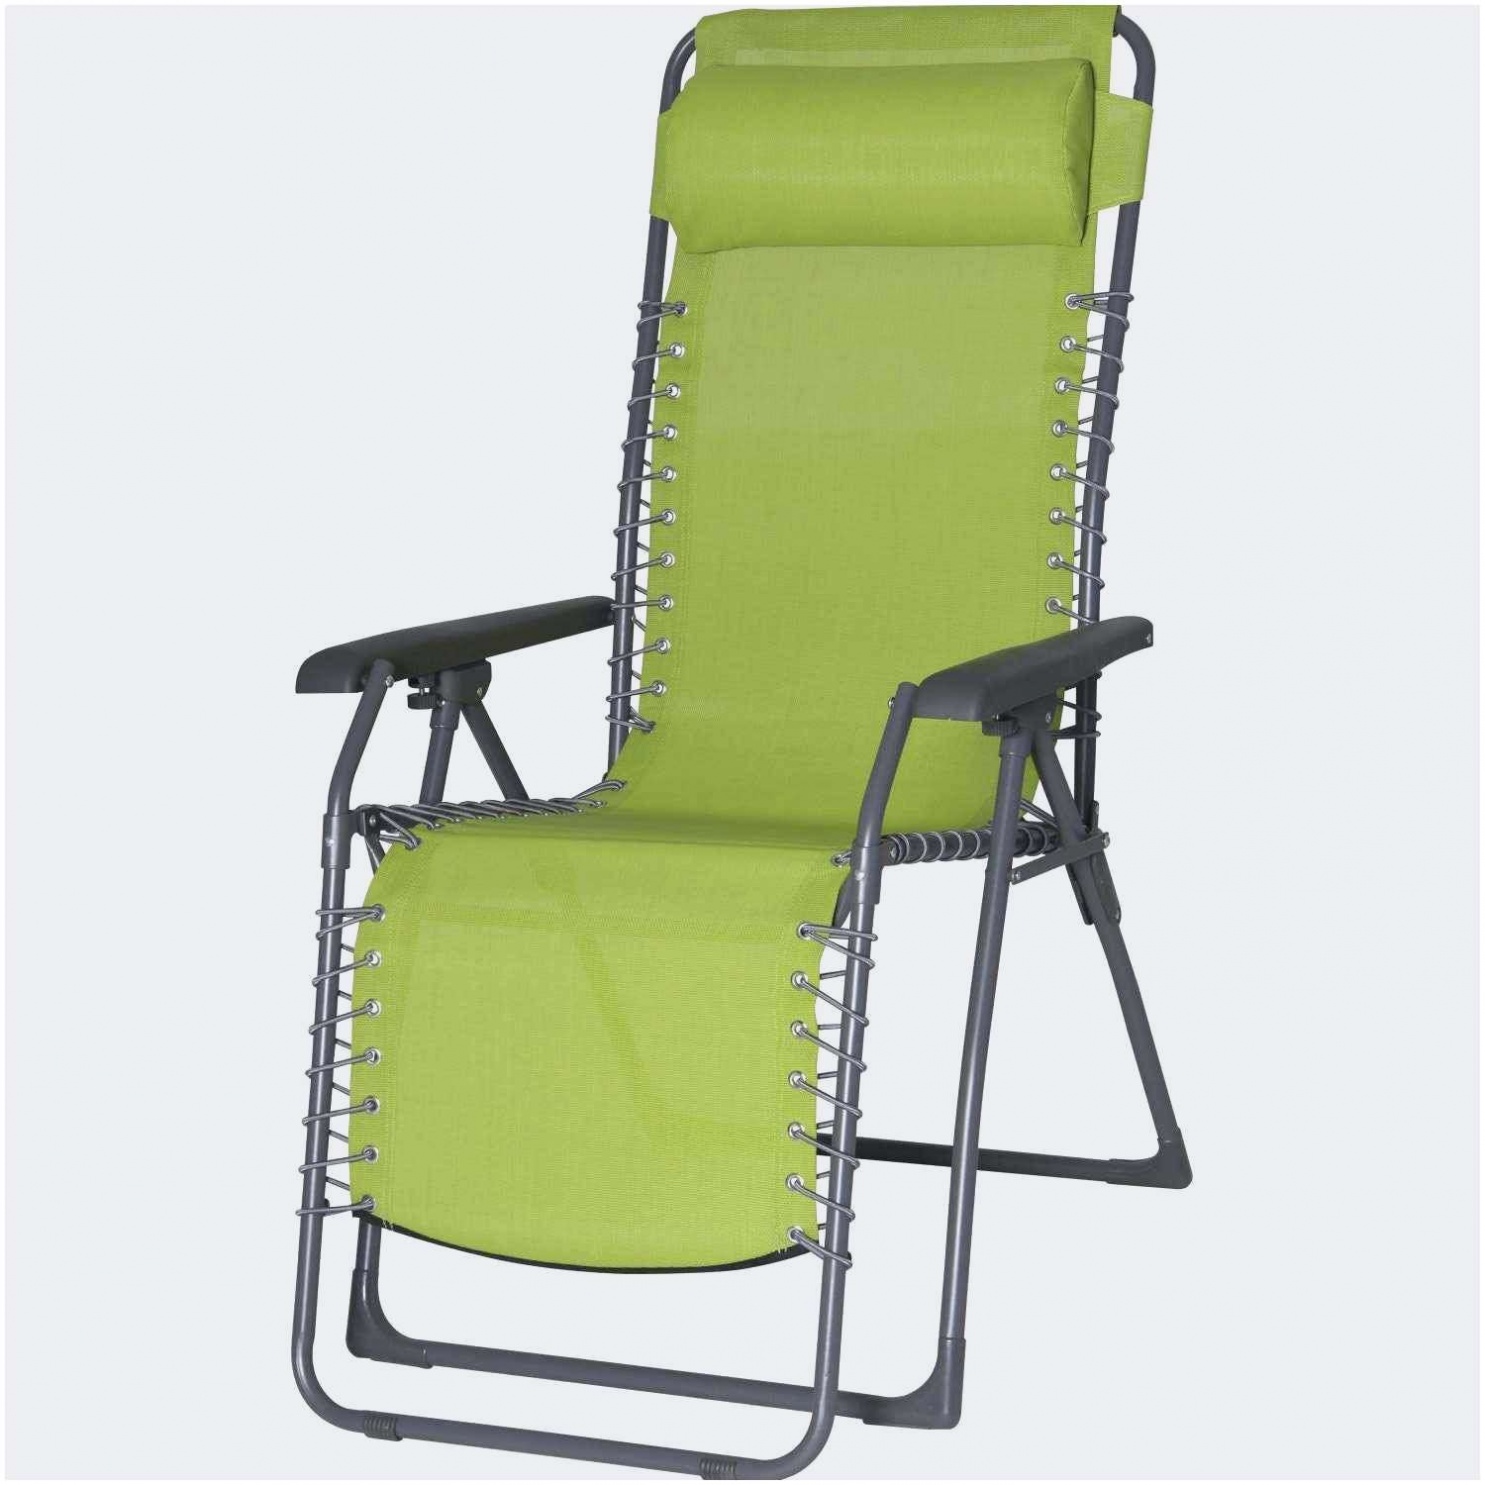 elegant galette chaise exterieur nouveau galerie galettes de chaises fauteuil rond exterieur of fauteuil rond exterieur